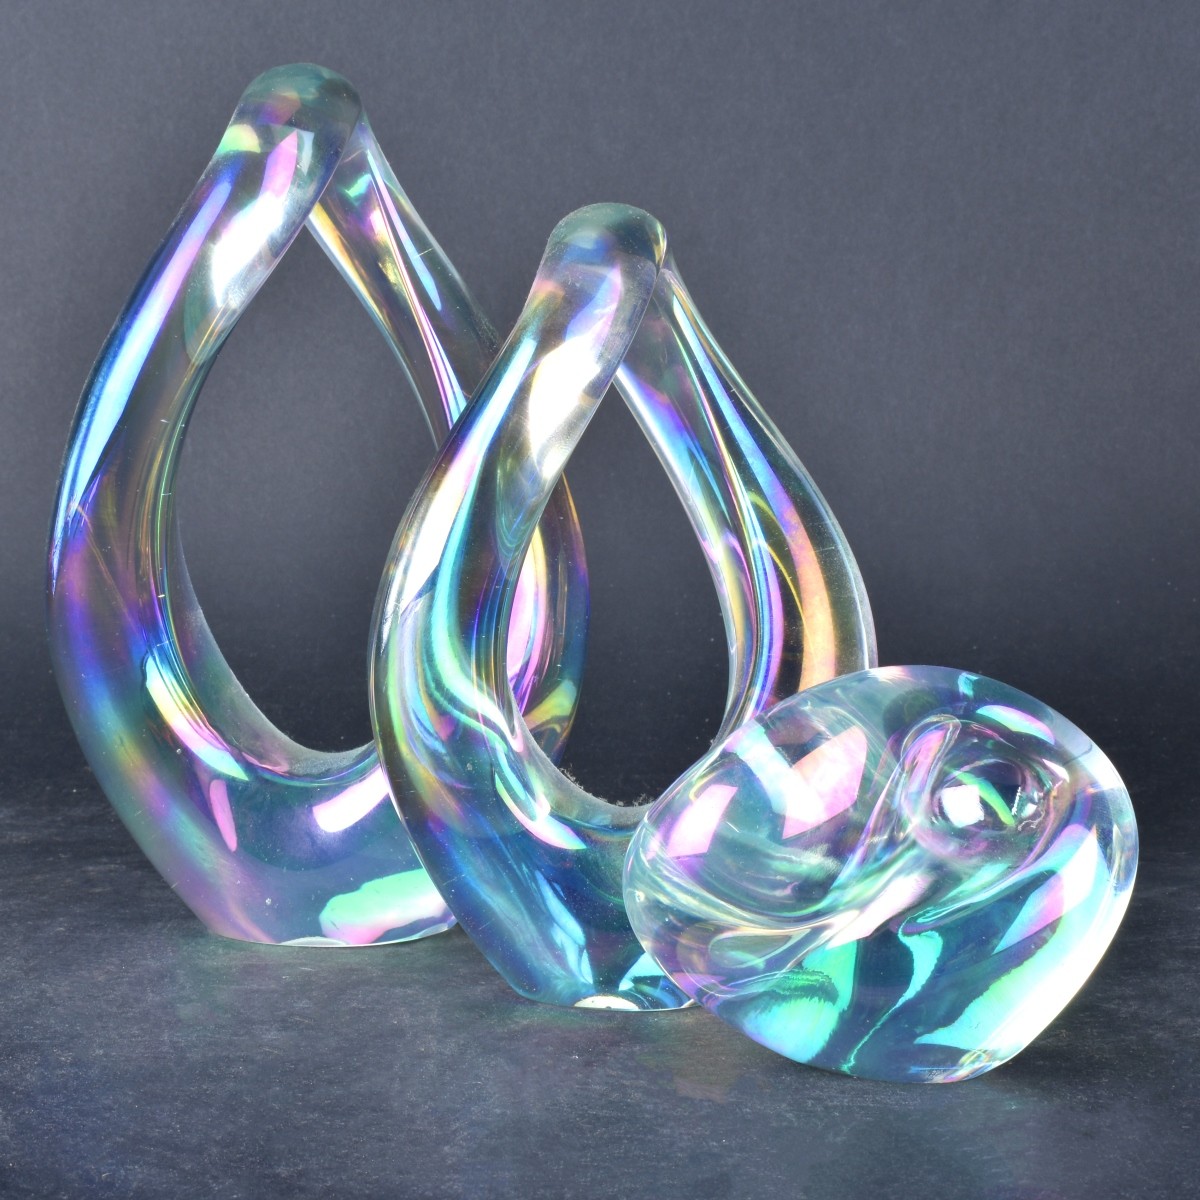 Five (5) Eickholt Art Glass Objects